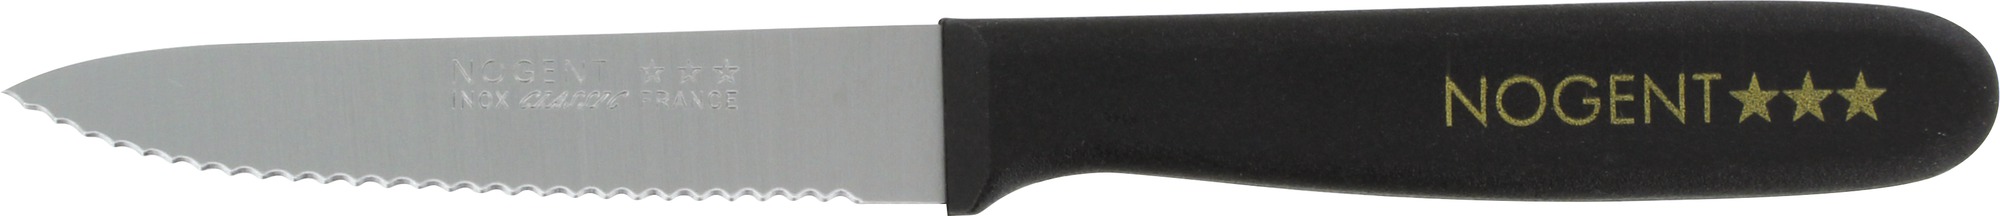 Couteau manche résine Classic Nogent - Office - Lame pointue 9 cm crantée 1 mm - Manche noir